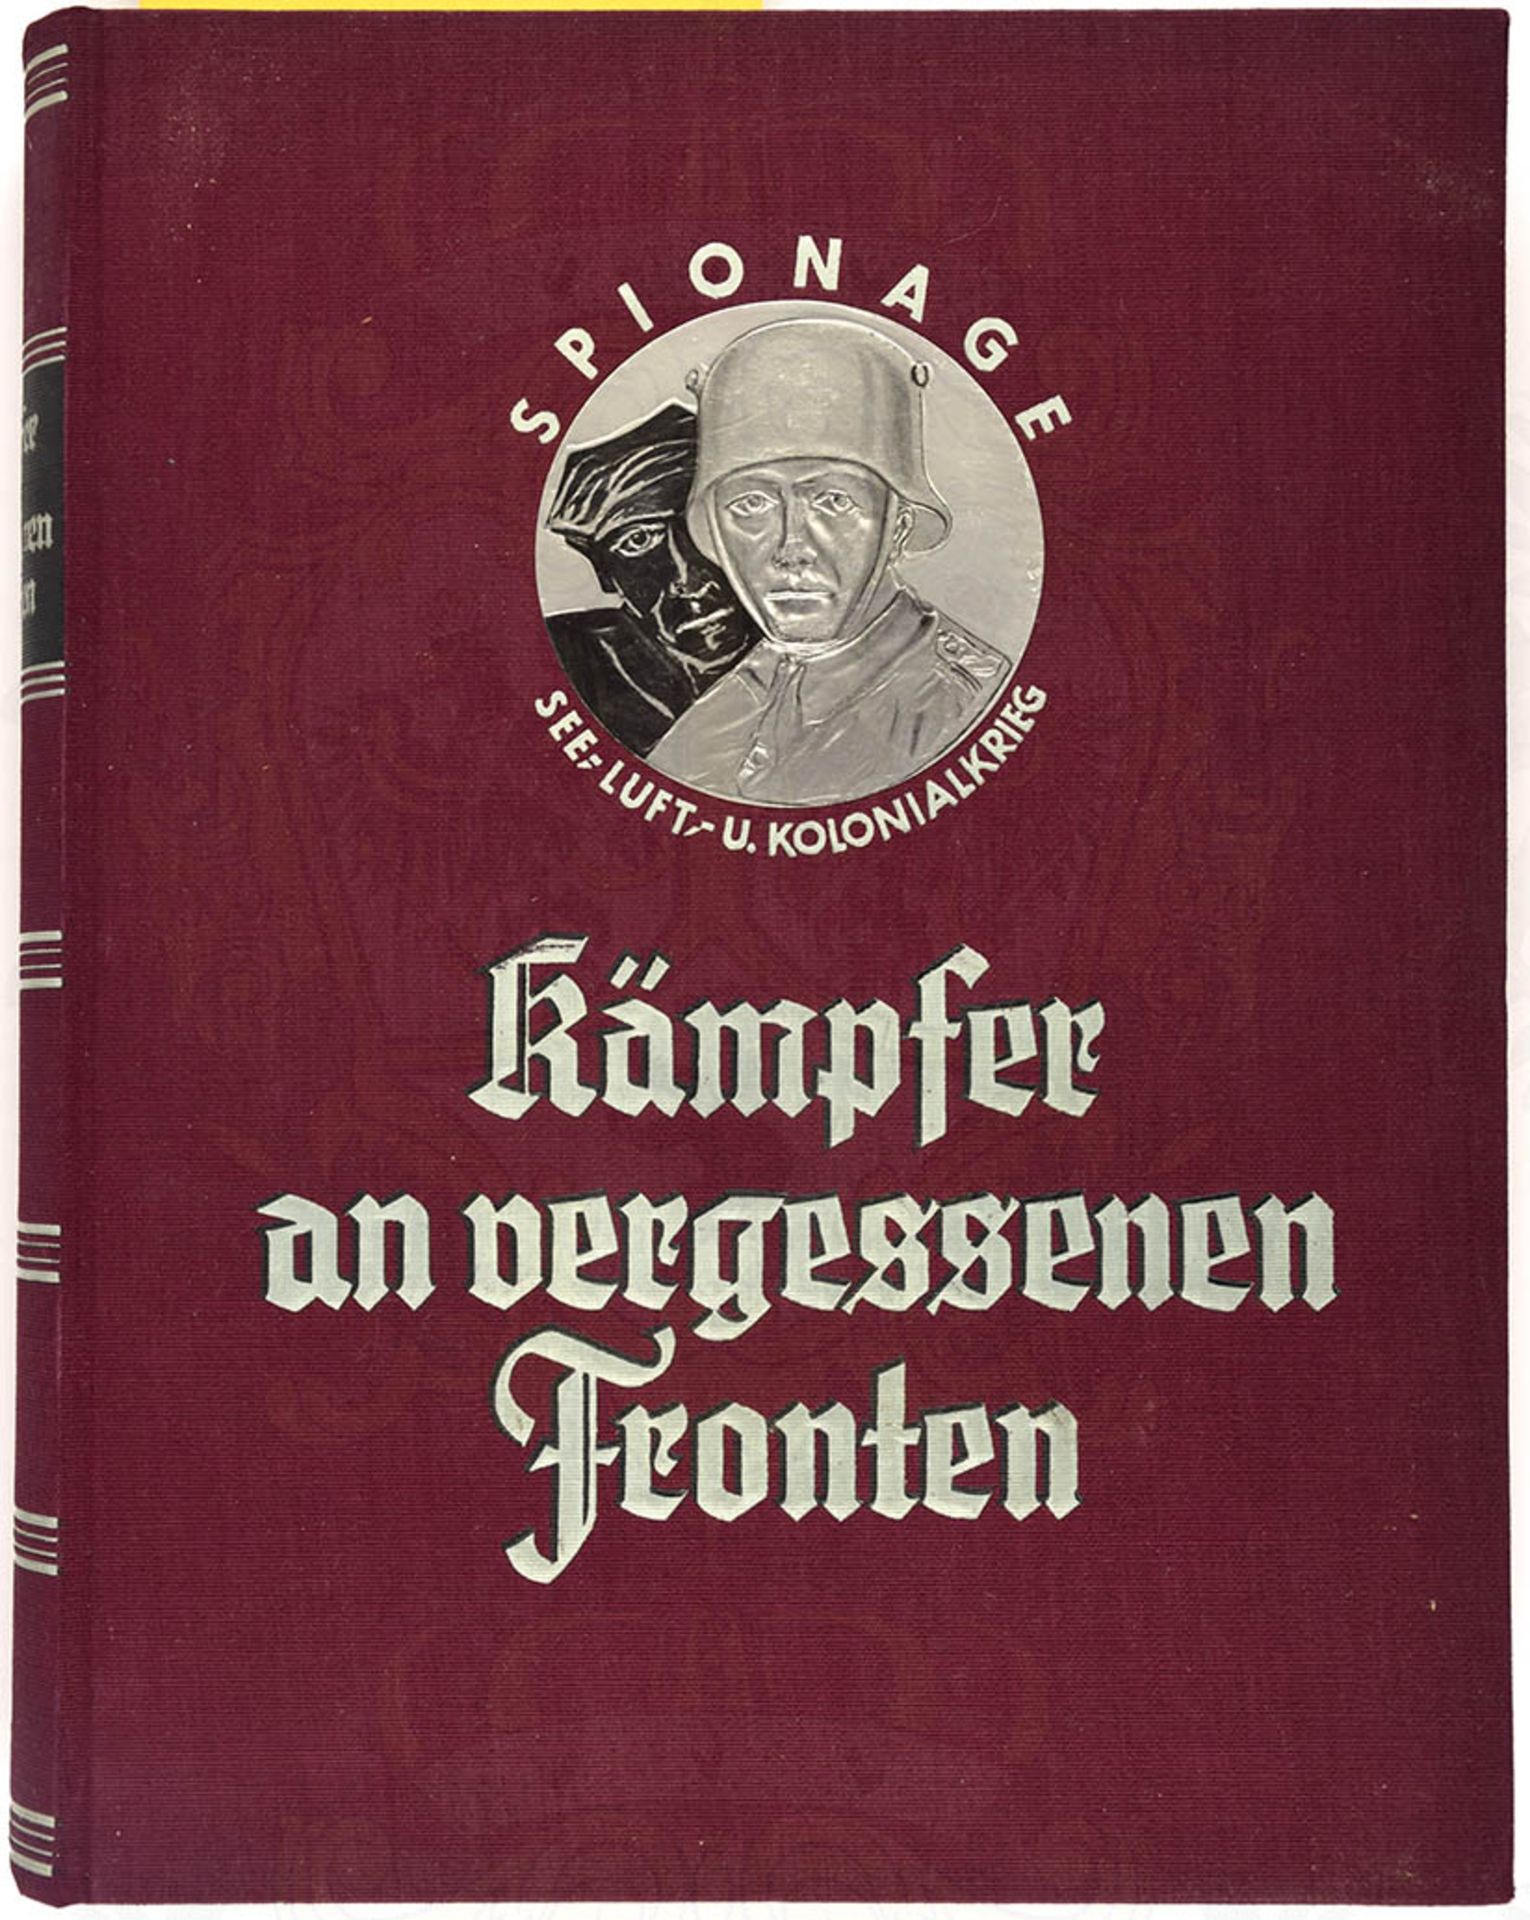 KÄMPFER AN VERGESSENEN FRONTEN, Kolonialkrieg, Seekrieg, Luftkrieg, Spionage, v. W. Foerster,